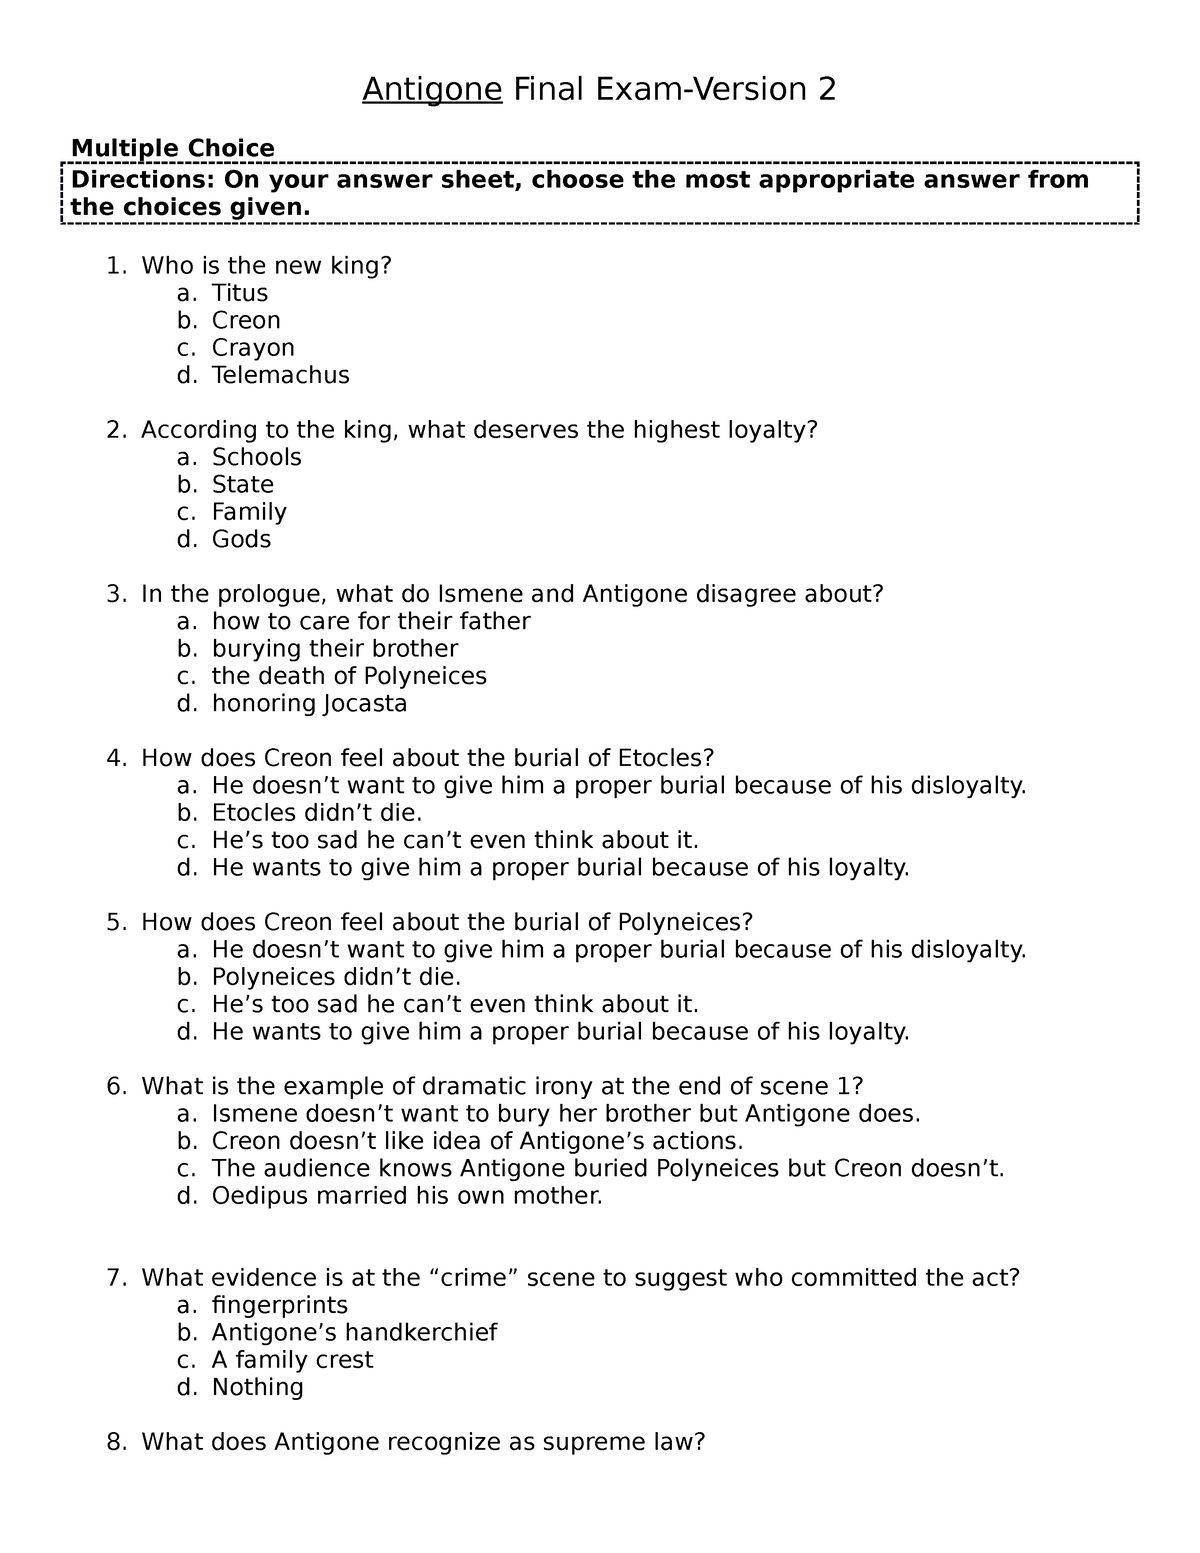 Antigone Quizzes & Final Exam - Scenes 1-5 with Answer Key